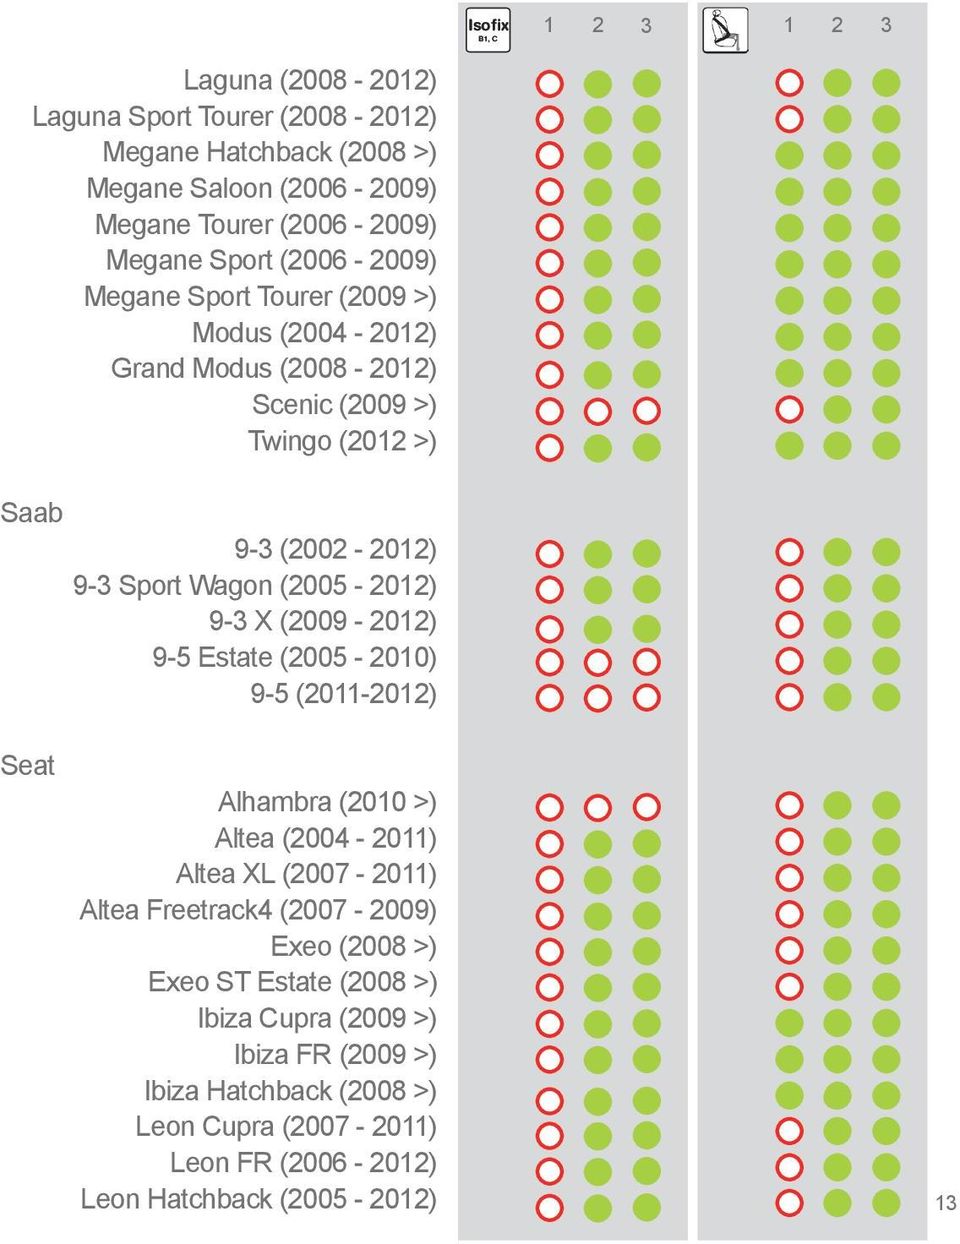 X (2009-2012) 9-5 Estate (2005-2010) 9-5 (2011-2012) Seat Alhambra (2010 >) Altea (2004-2011) Altea XL (2007-2011) Altea Freetrack4 (2007-2009) Exeo (2008